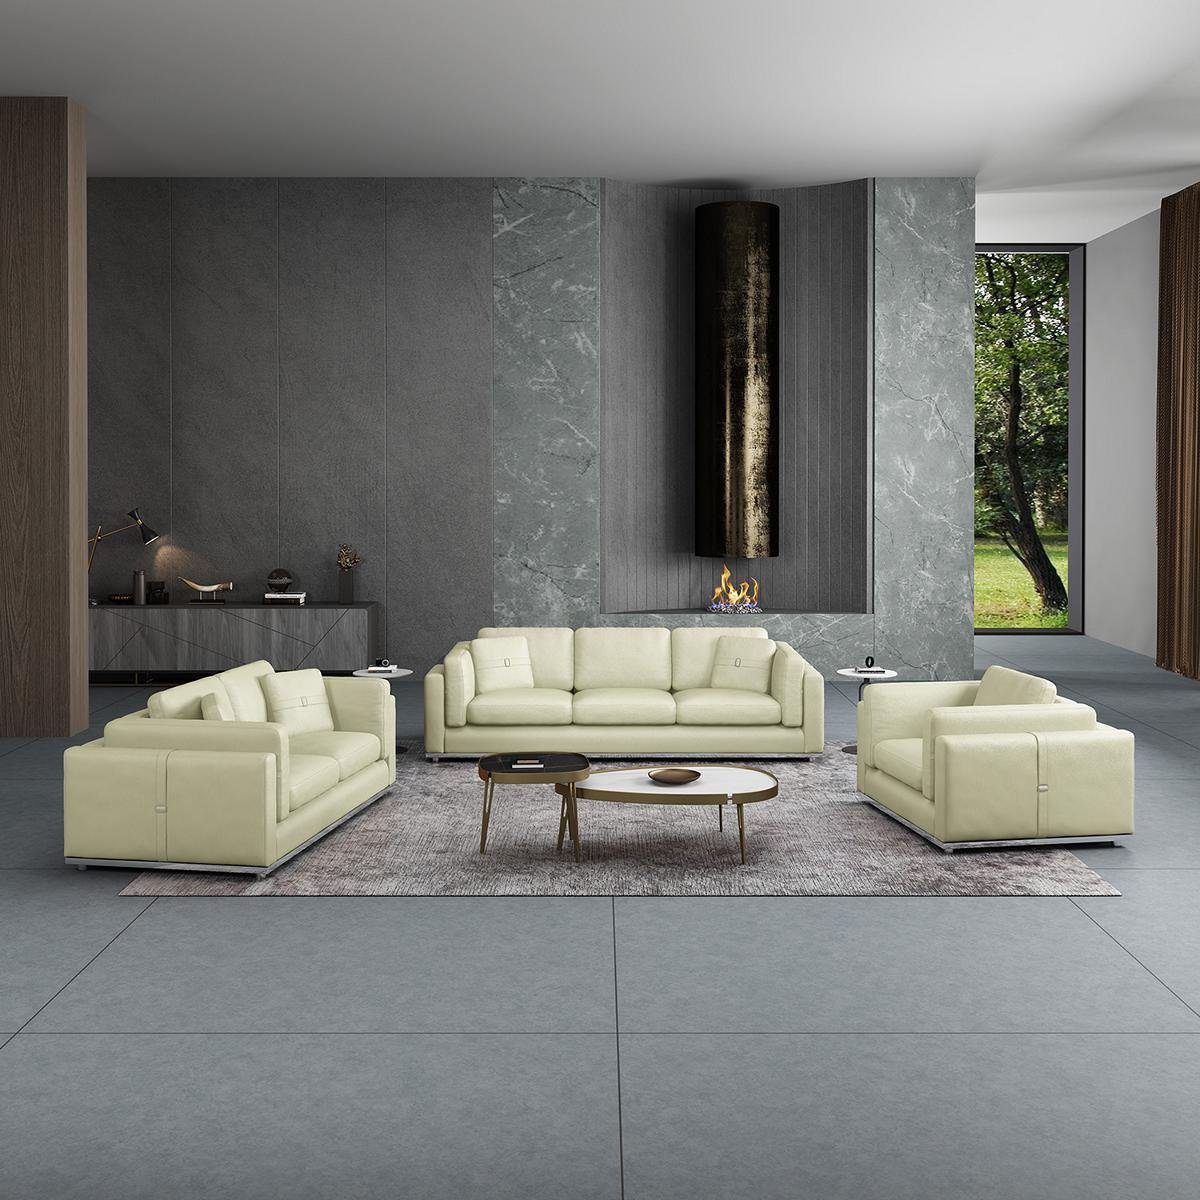 JVmoebel Wohnzimmer-Set, Sofagarnitur 3 1 Sitzer Design Couch Polster Sofas Modern Garnitur Weiß